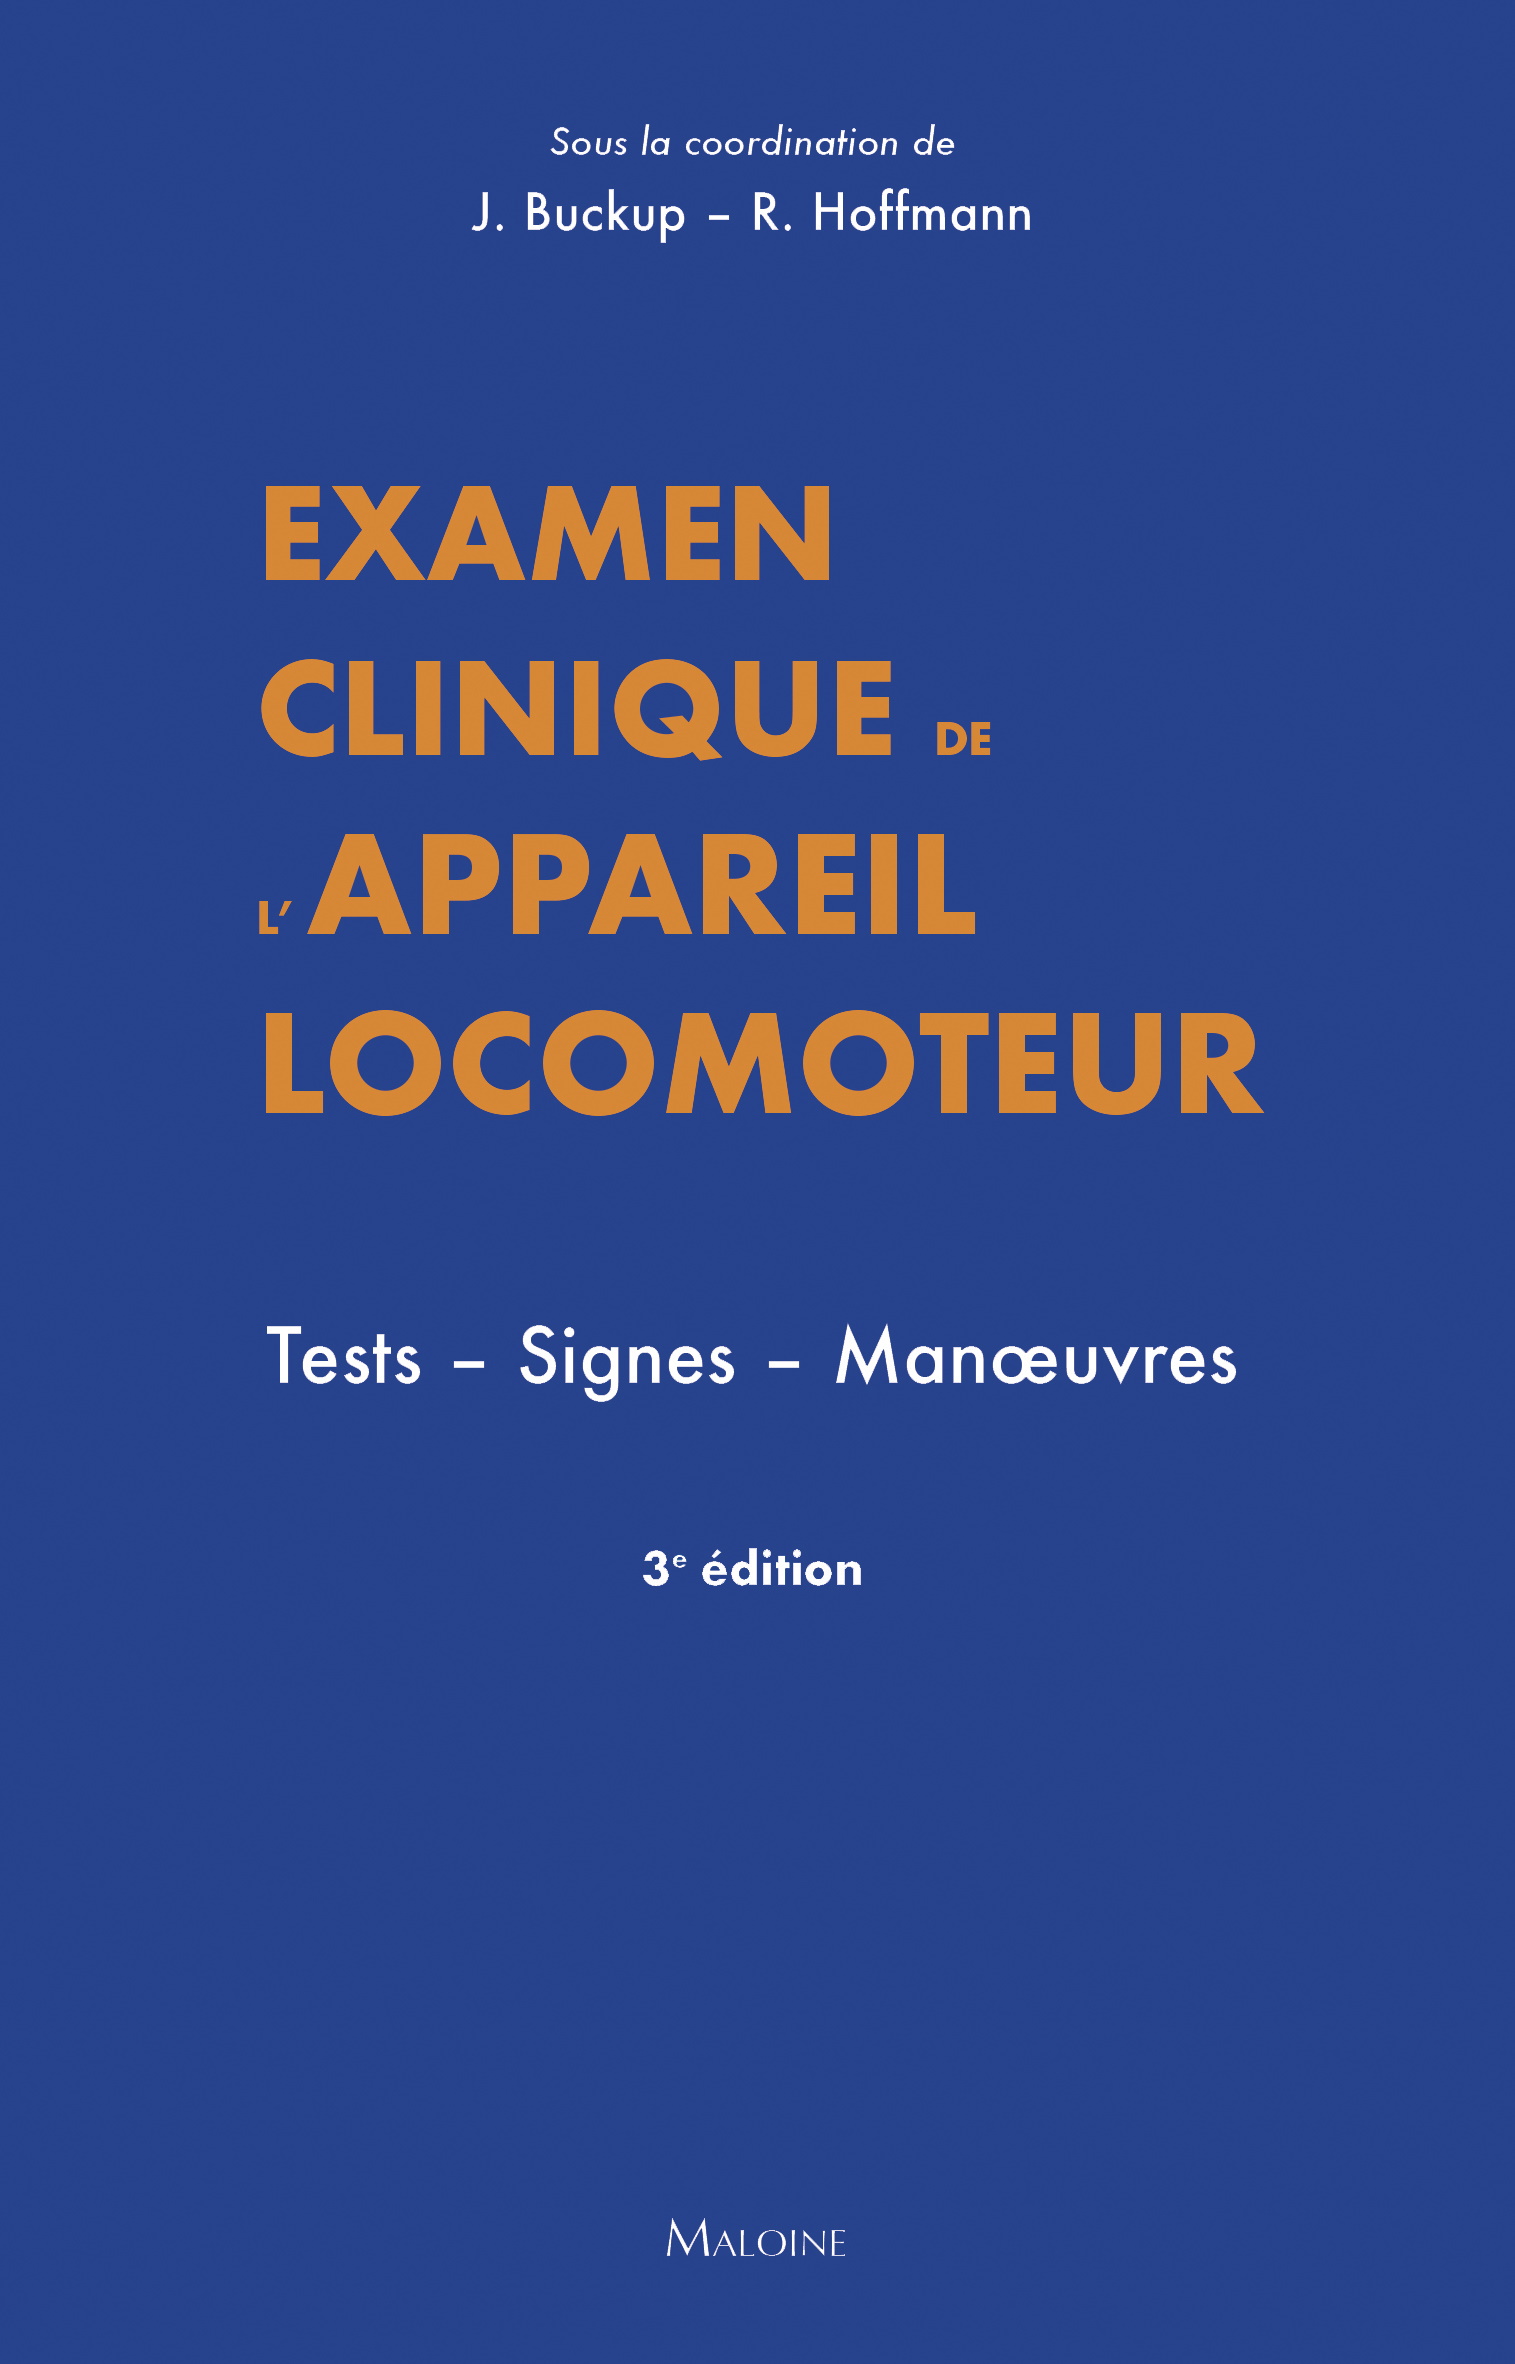 Examen clinique de l'appareil locomoteur. Tests. Signes. Manoeuvres. 3e éd.